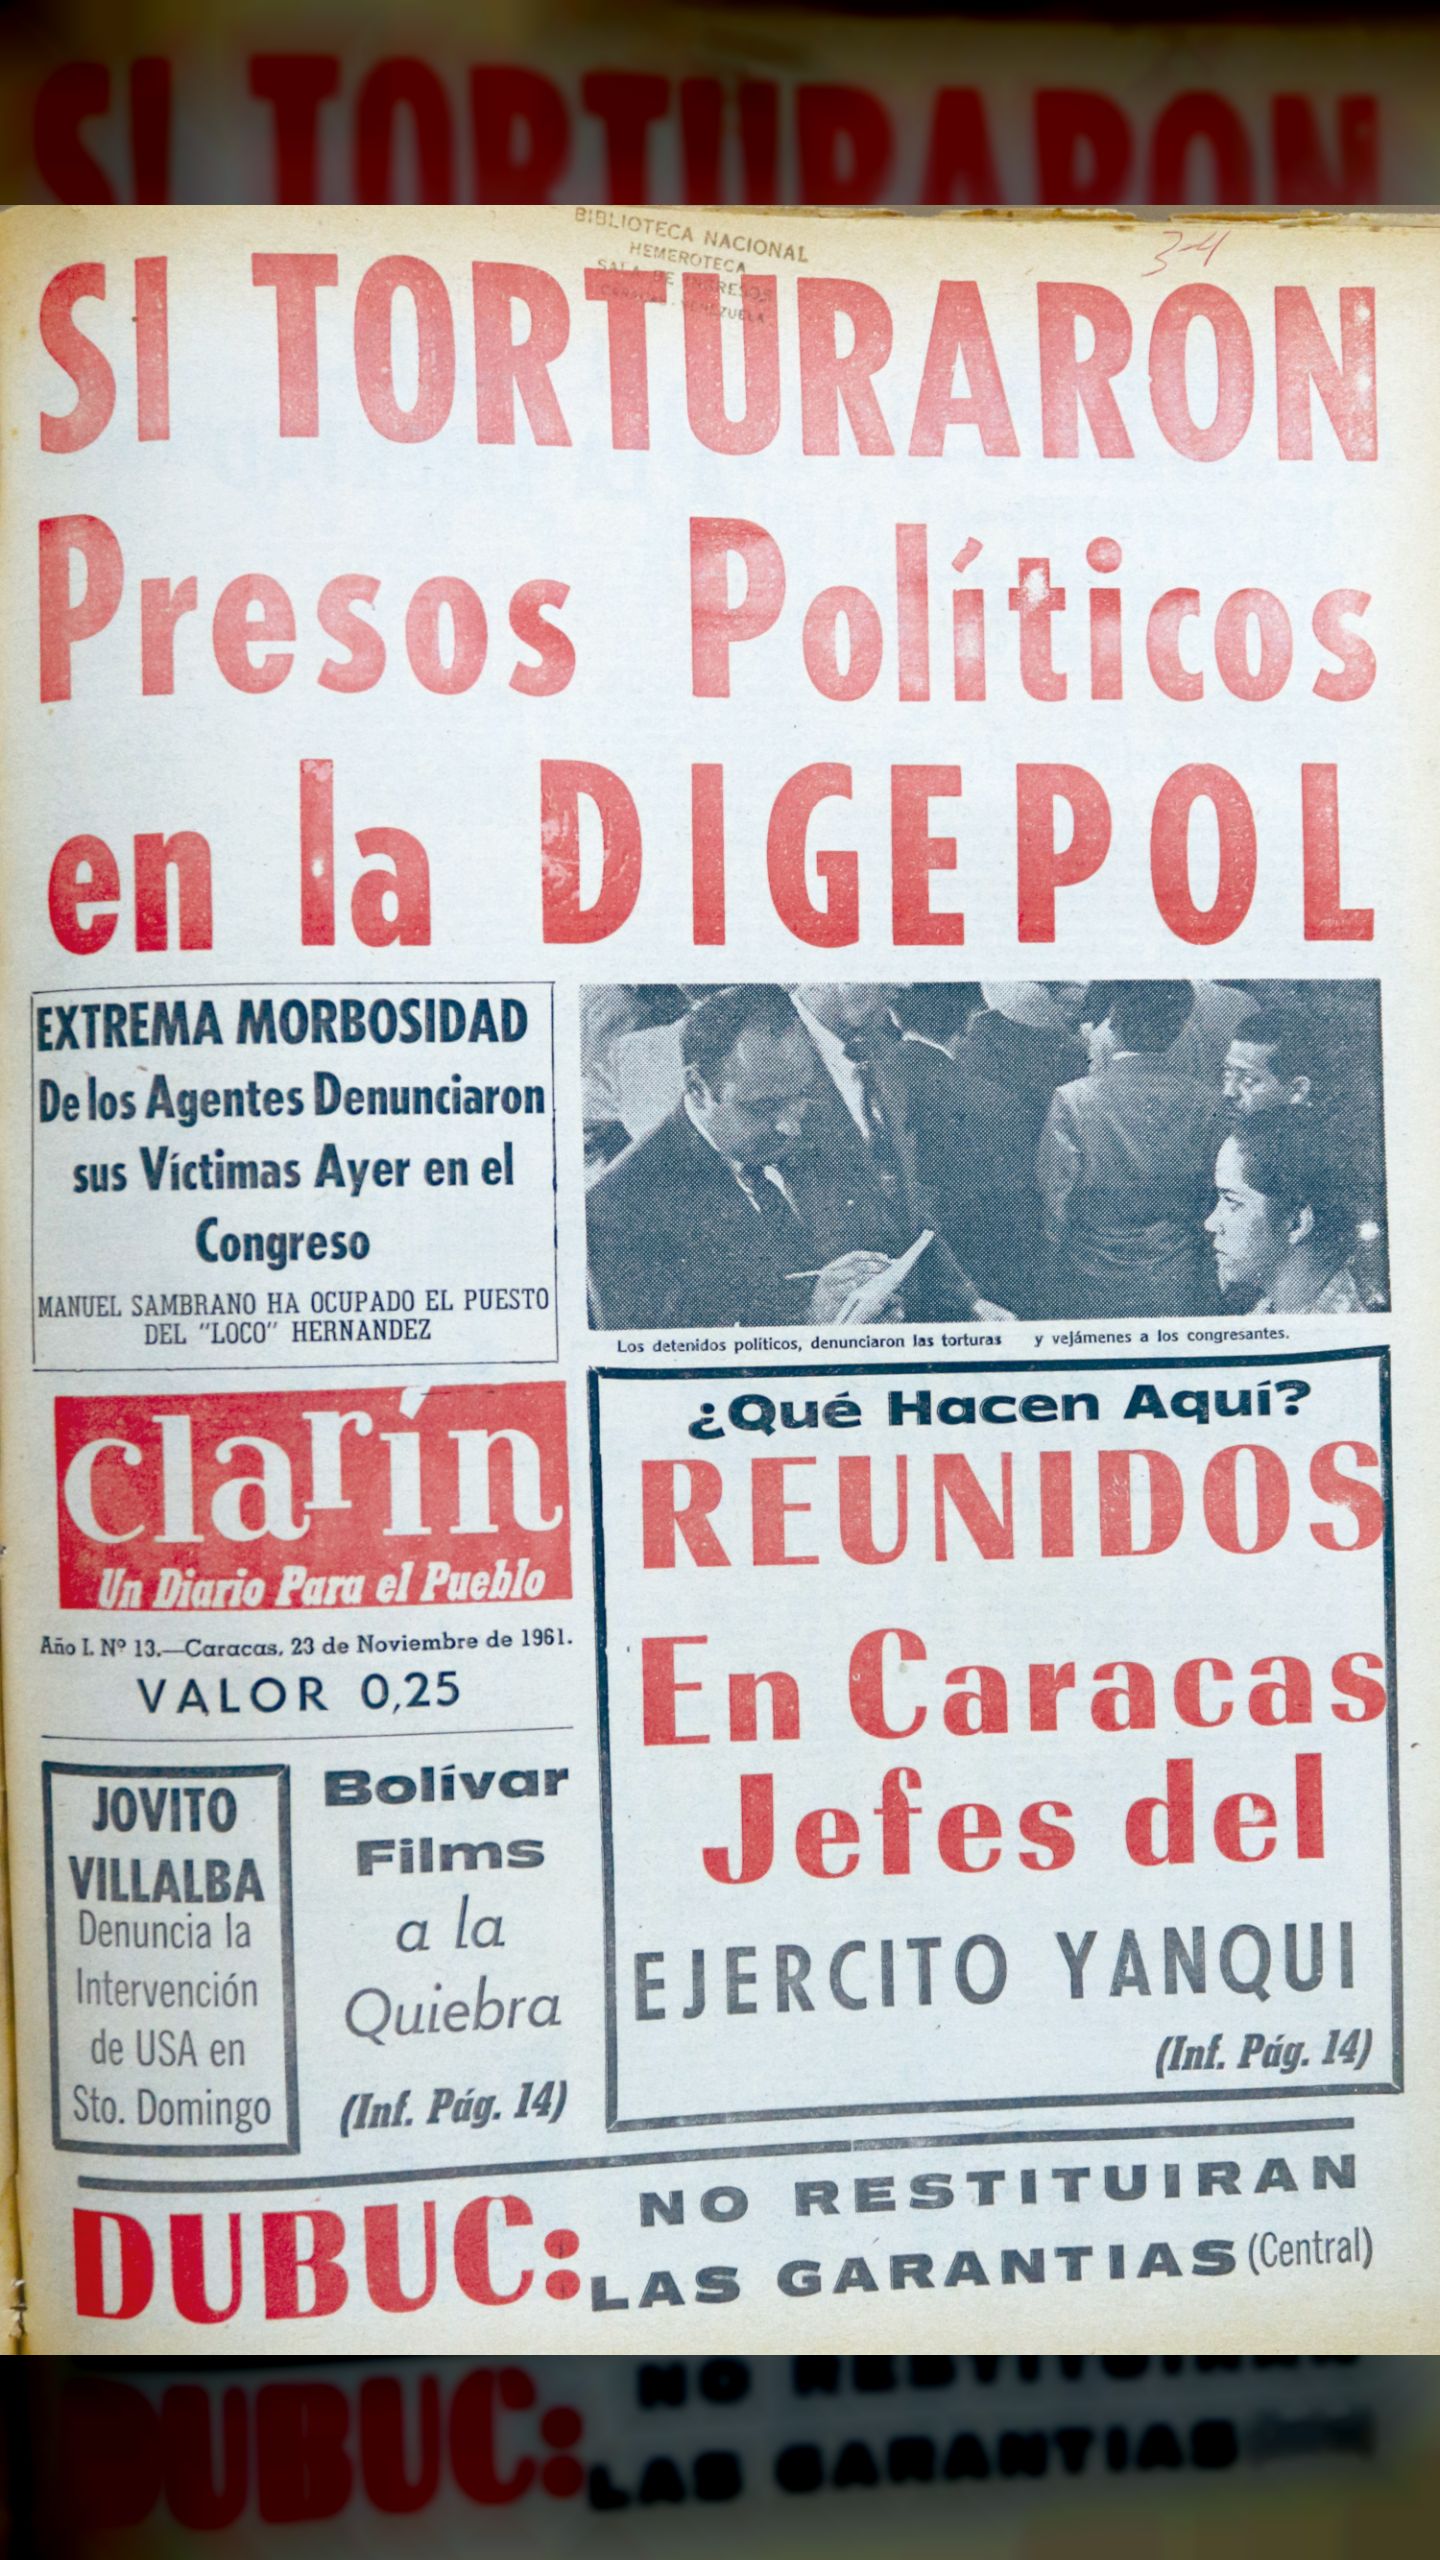 Si torturaron presos políticos en la Digepol (Clarín, 23 de noviembre de 1961)